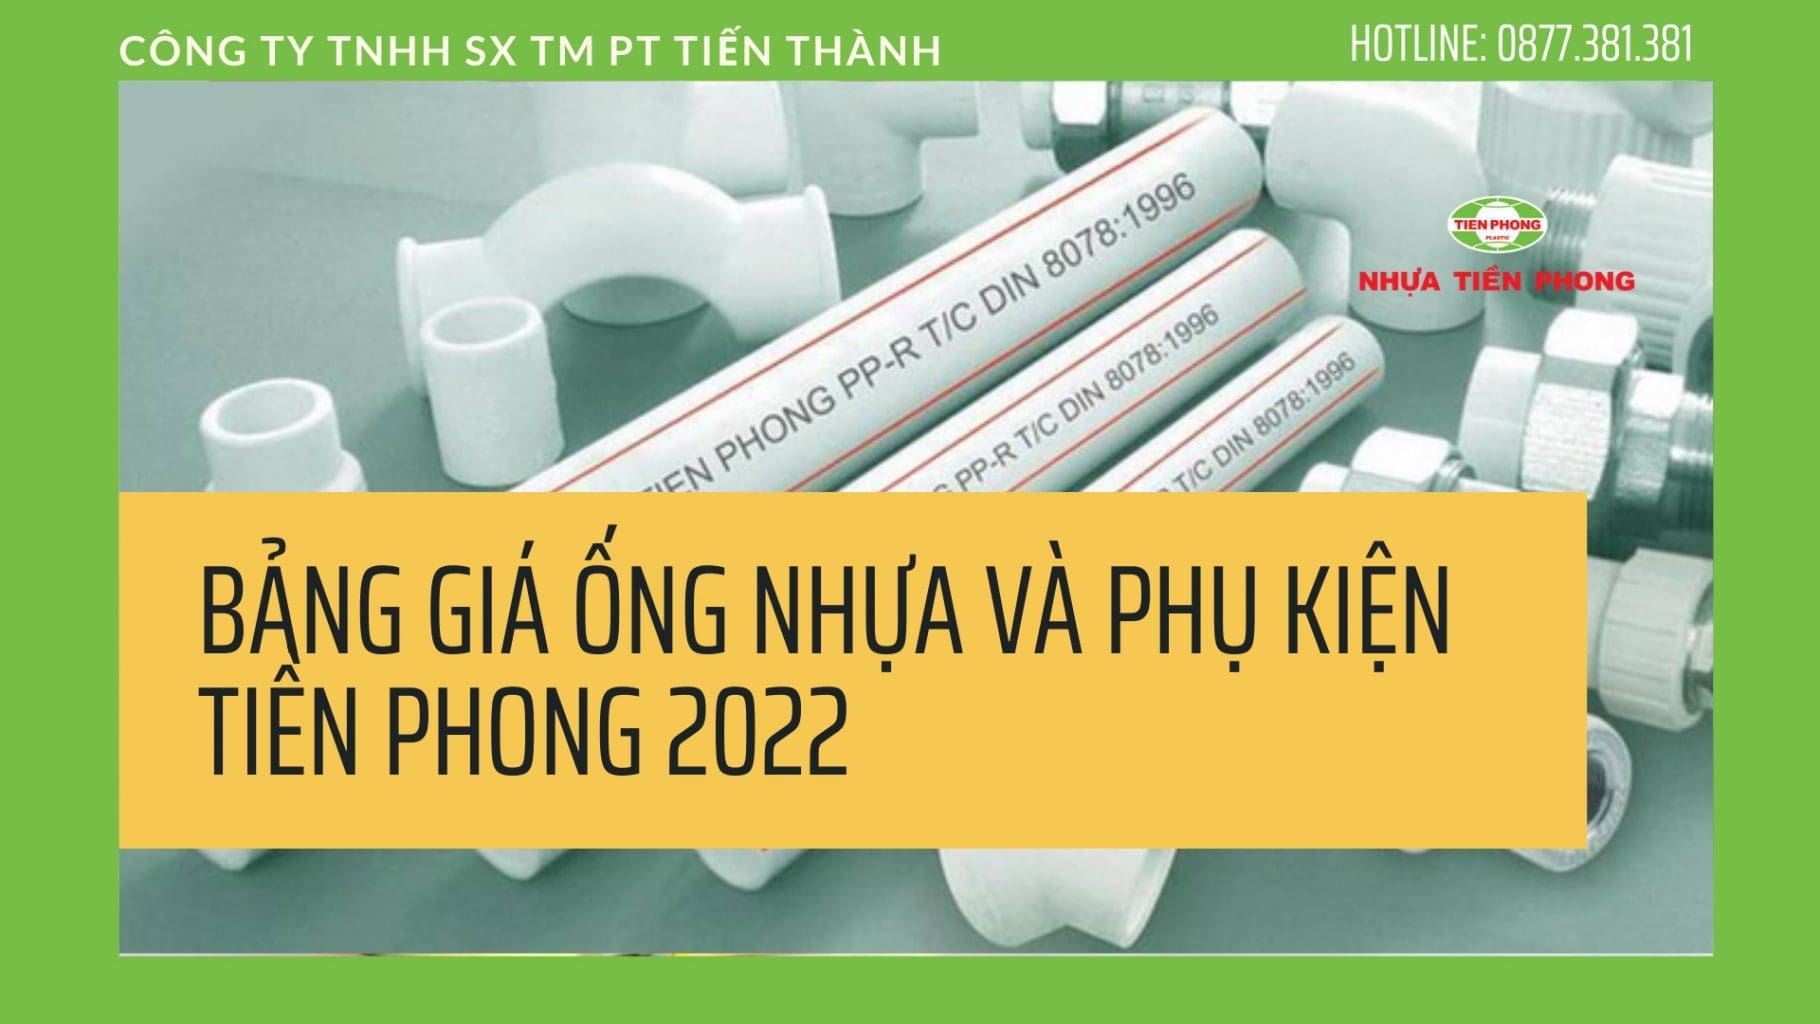 Bảng giá ống nhựa Tiền Phong